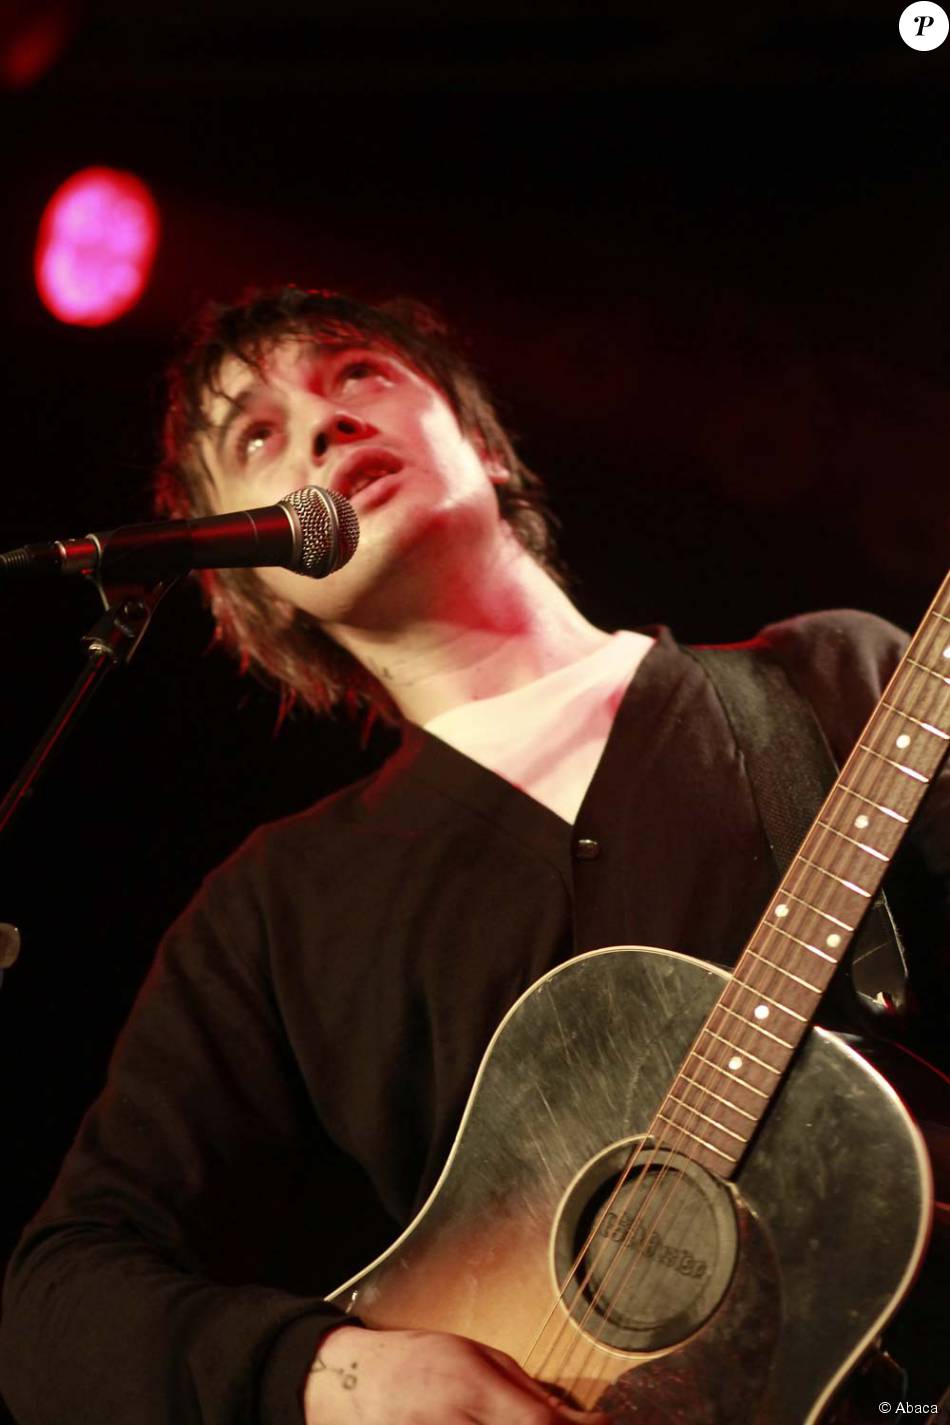 Pete Doherty en concert à Berlin, le 11 avril 2011. 